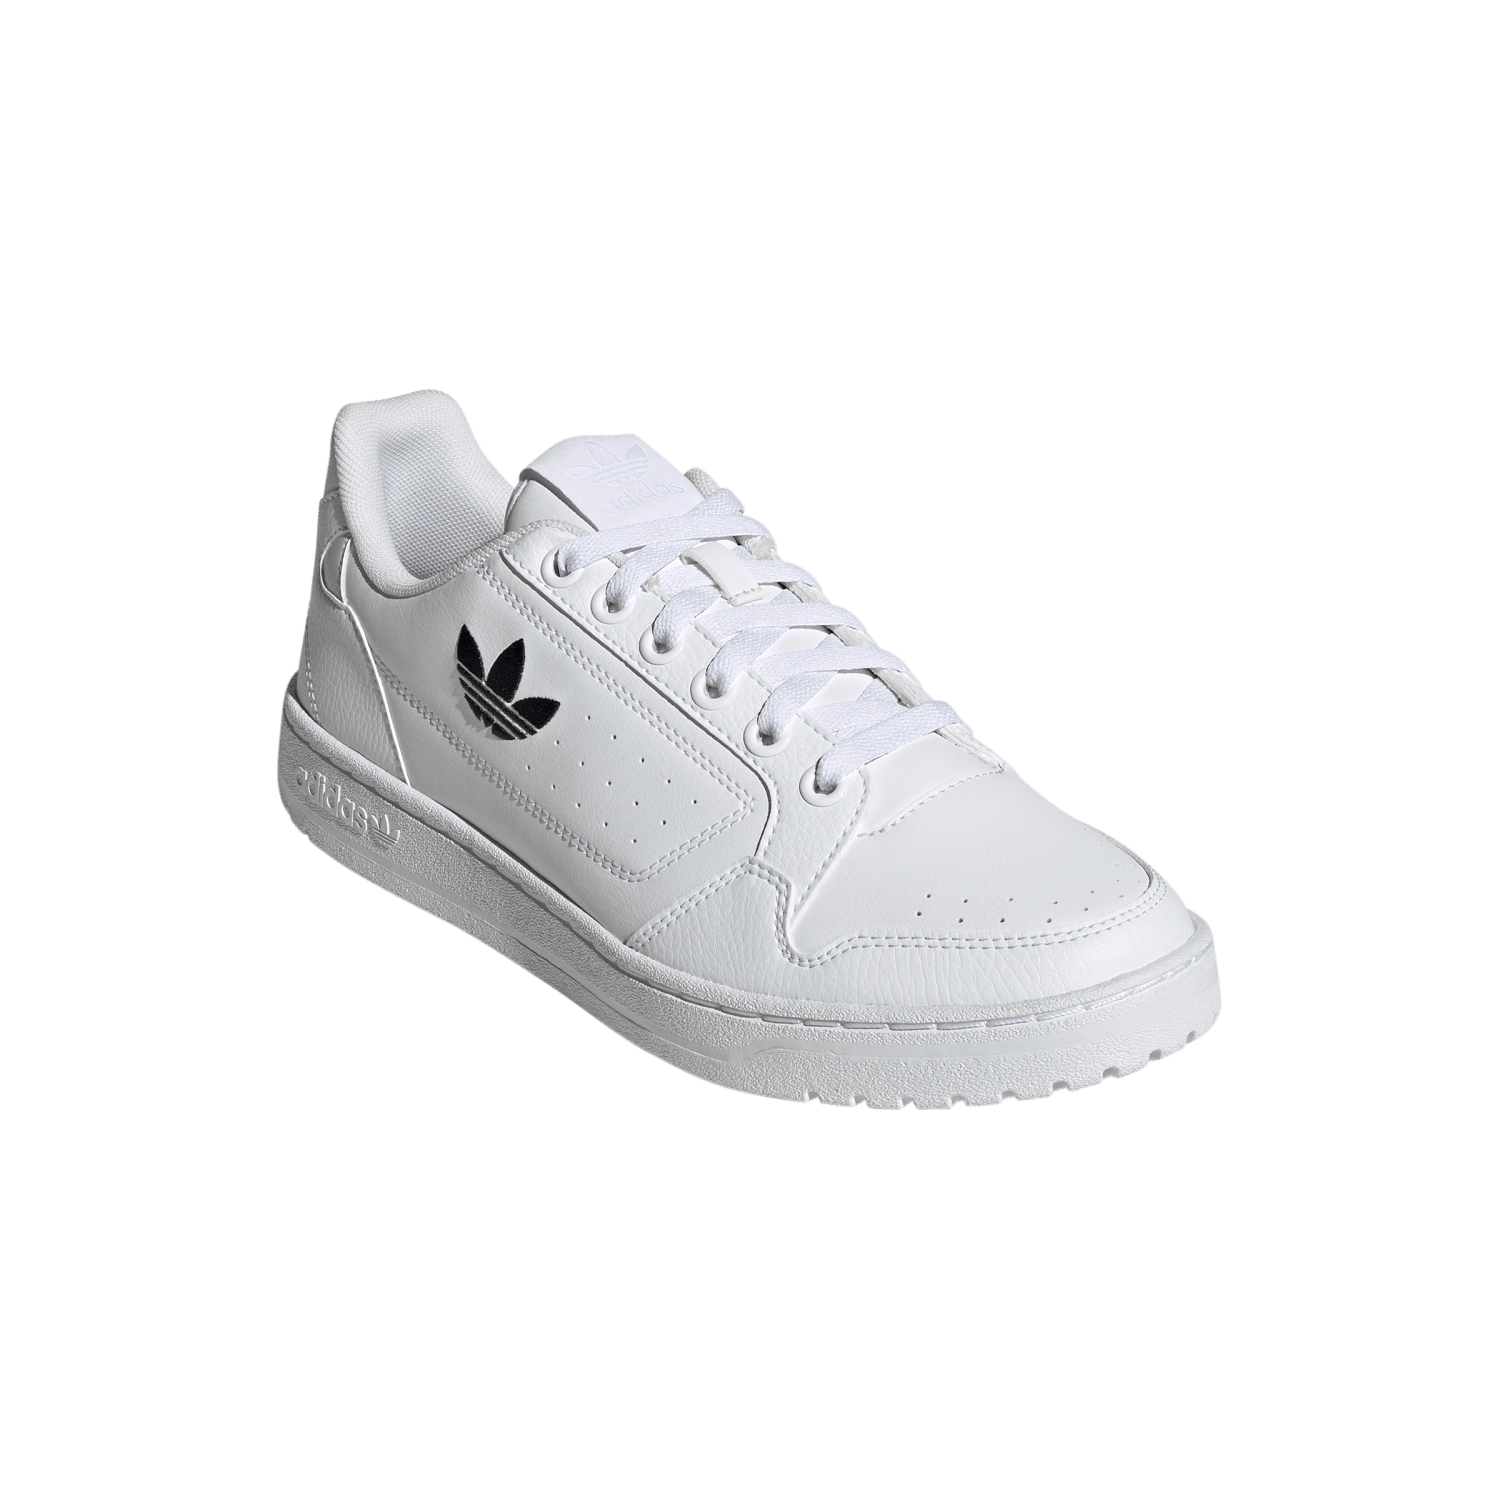 Adidas NY 90